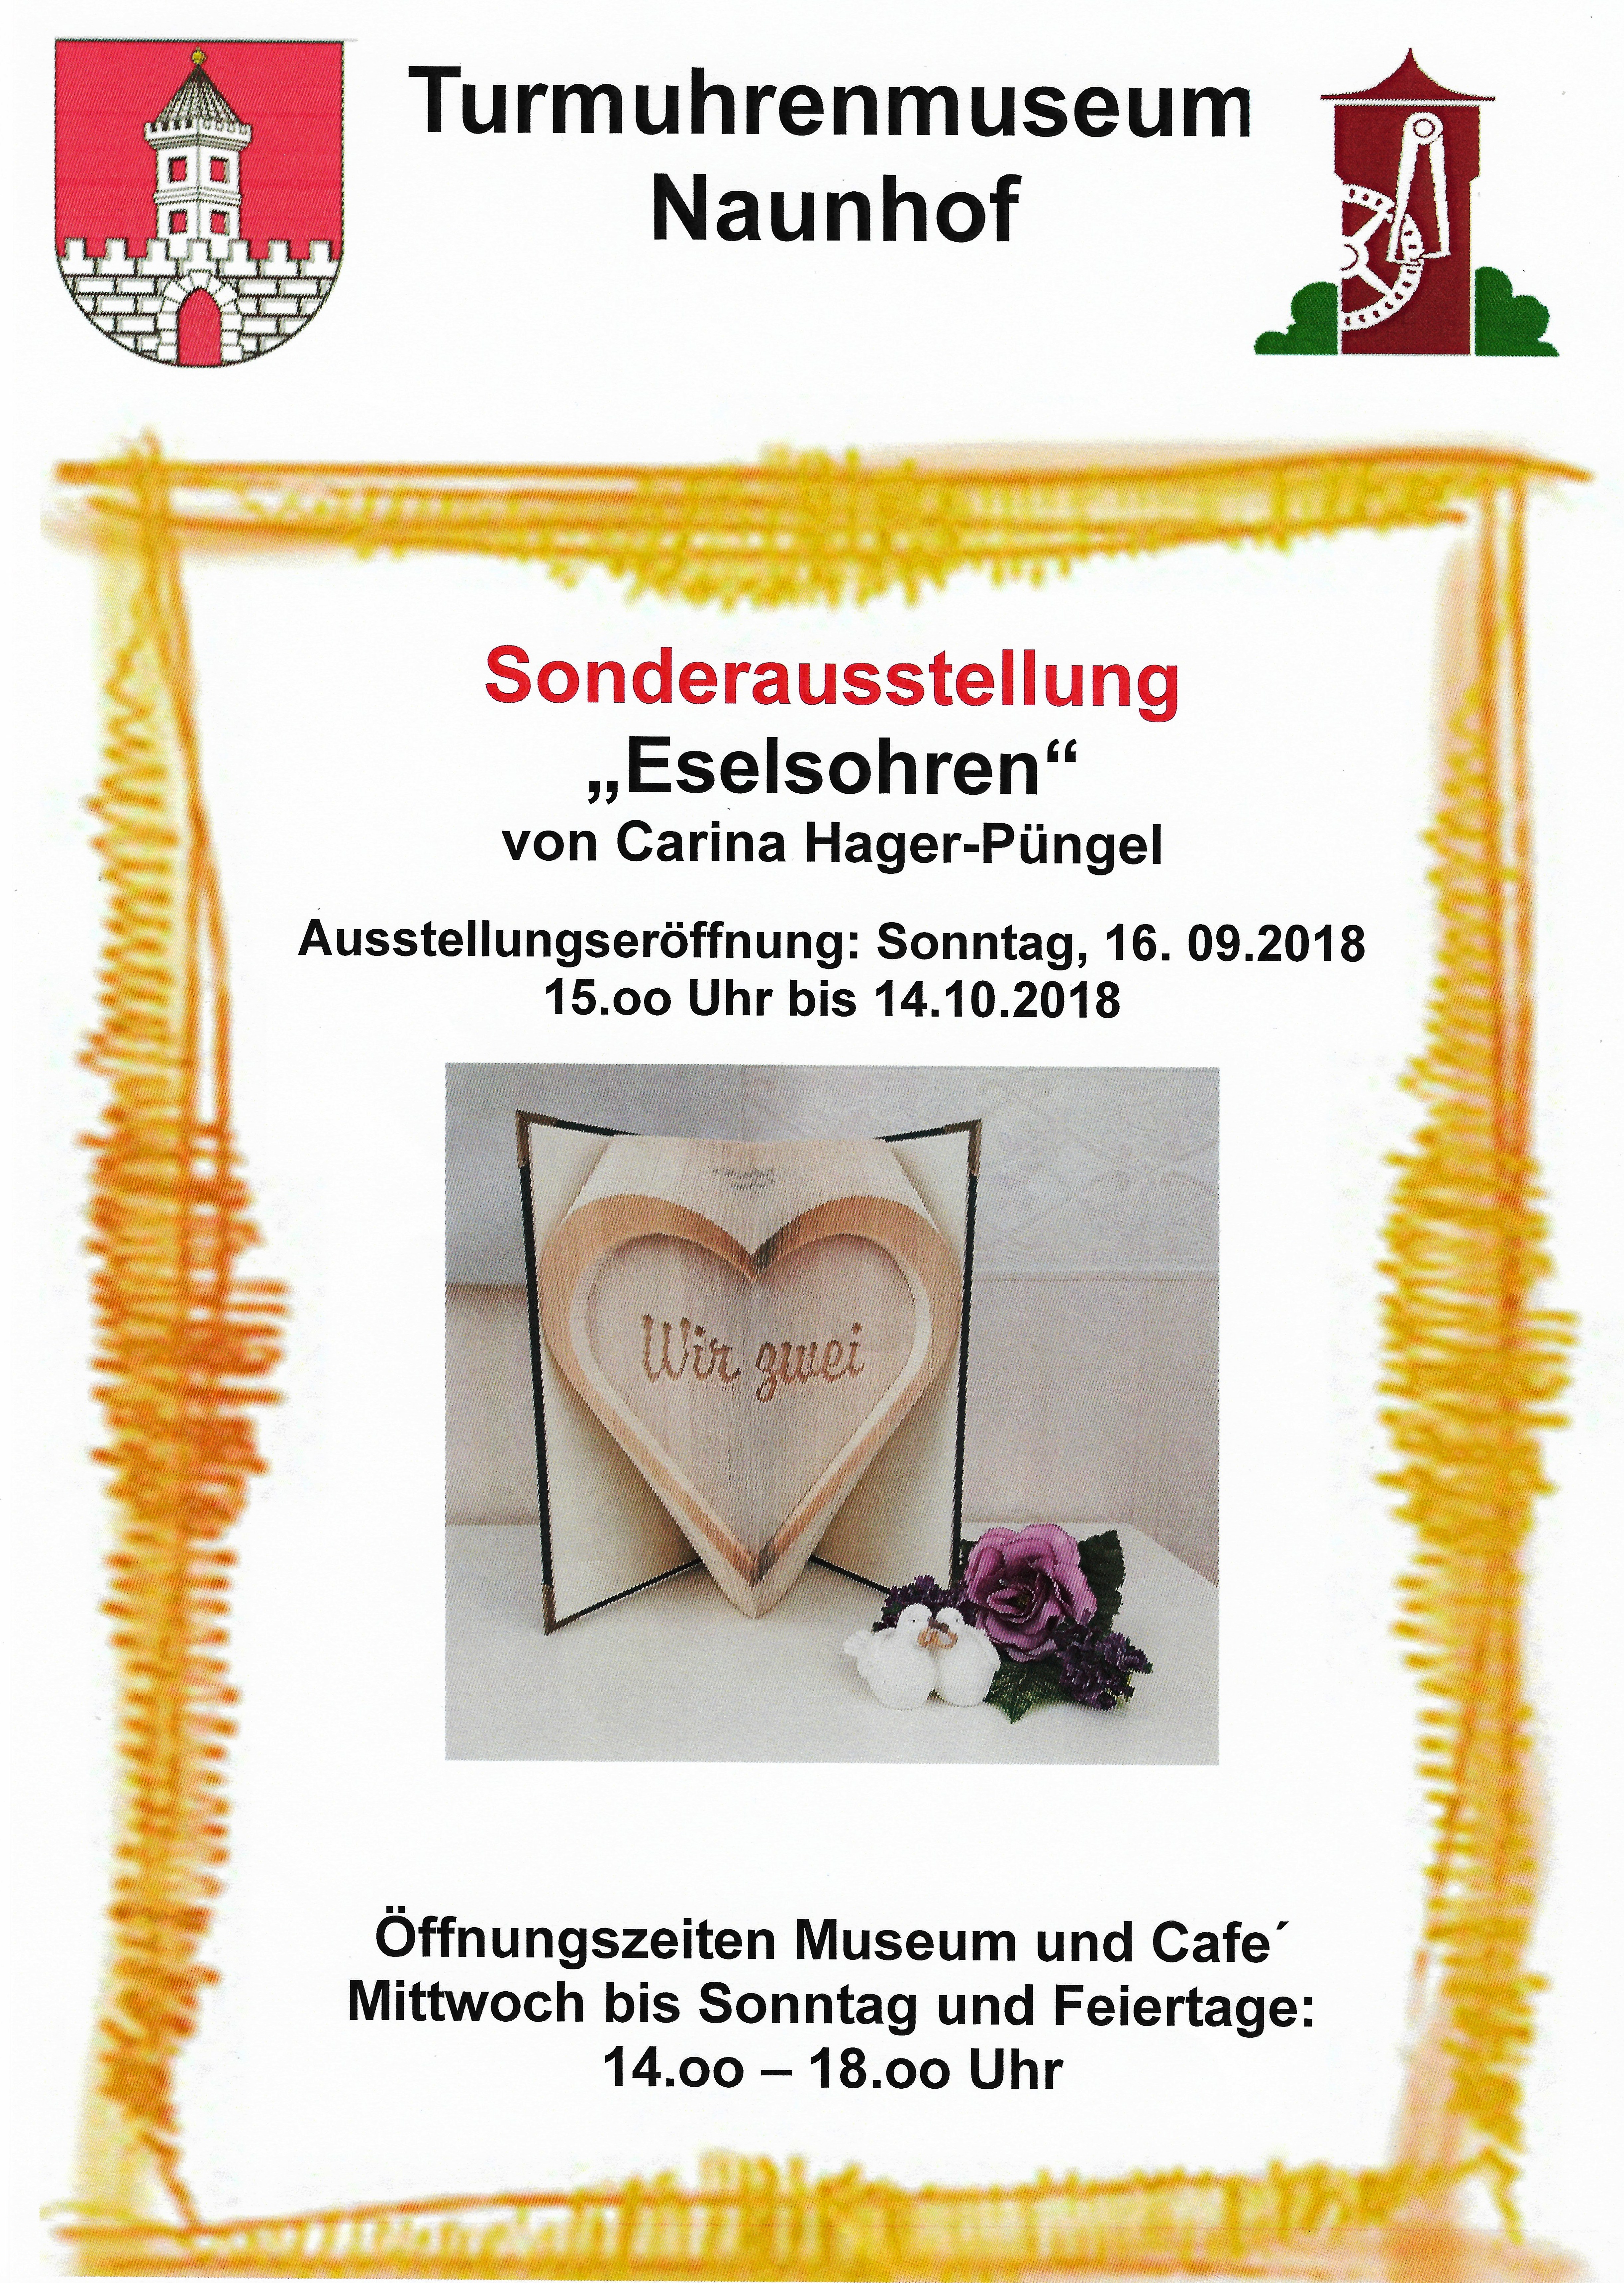 Ausstellung im Turmuhrenmuseum Naunhof vom 16.09.2018 bis 14.10.2018